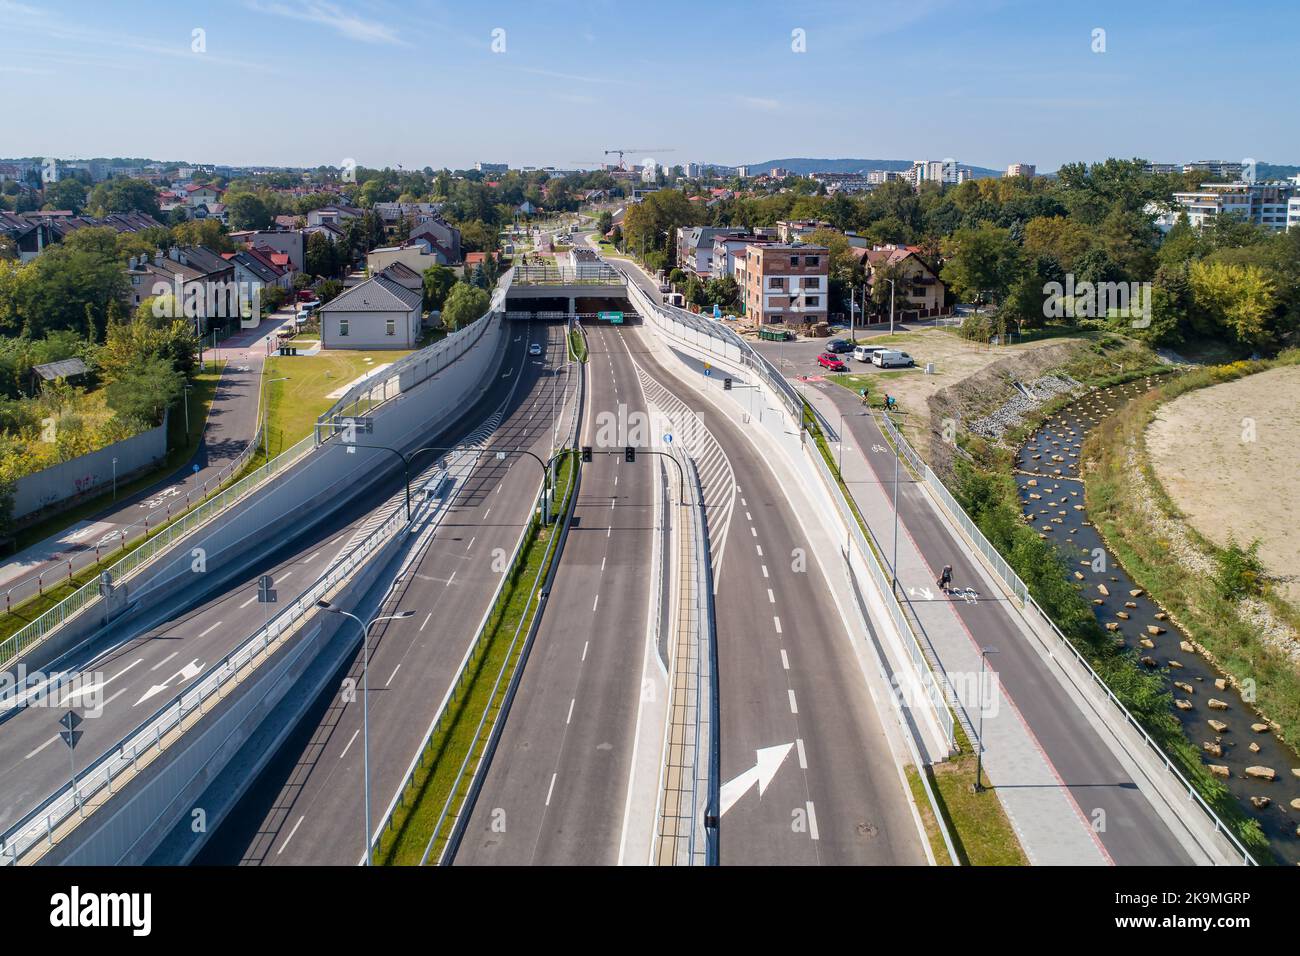 Neue Stadtautobahn Trasa Lagiewnicka in Krakau, Polen, mit Tunneln, Zufahrten, Radweg und Bürgersteig für Fußgänger. Regulierter Wilga-Fluss dekorieren Stockfoto